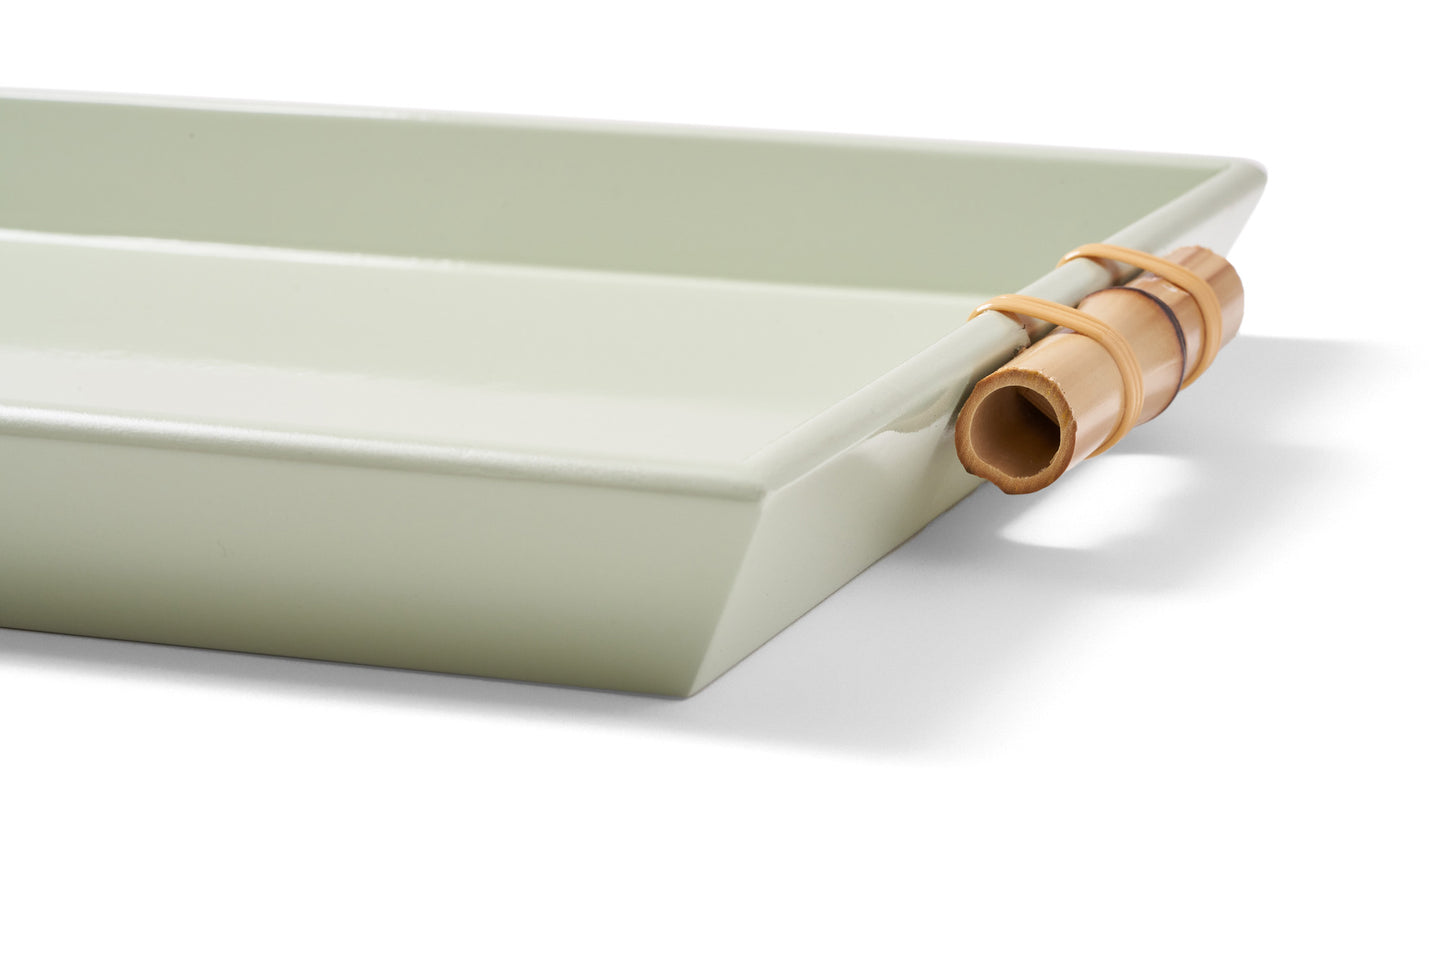 Bandeja Tânia Modelo Novo P Bambuzinho em MDF Laqueado - Verde Celadon Claro